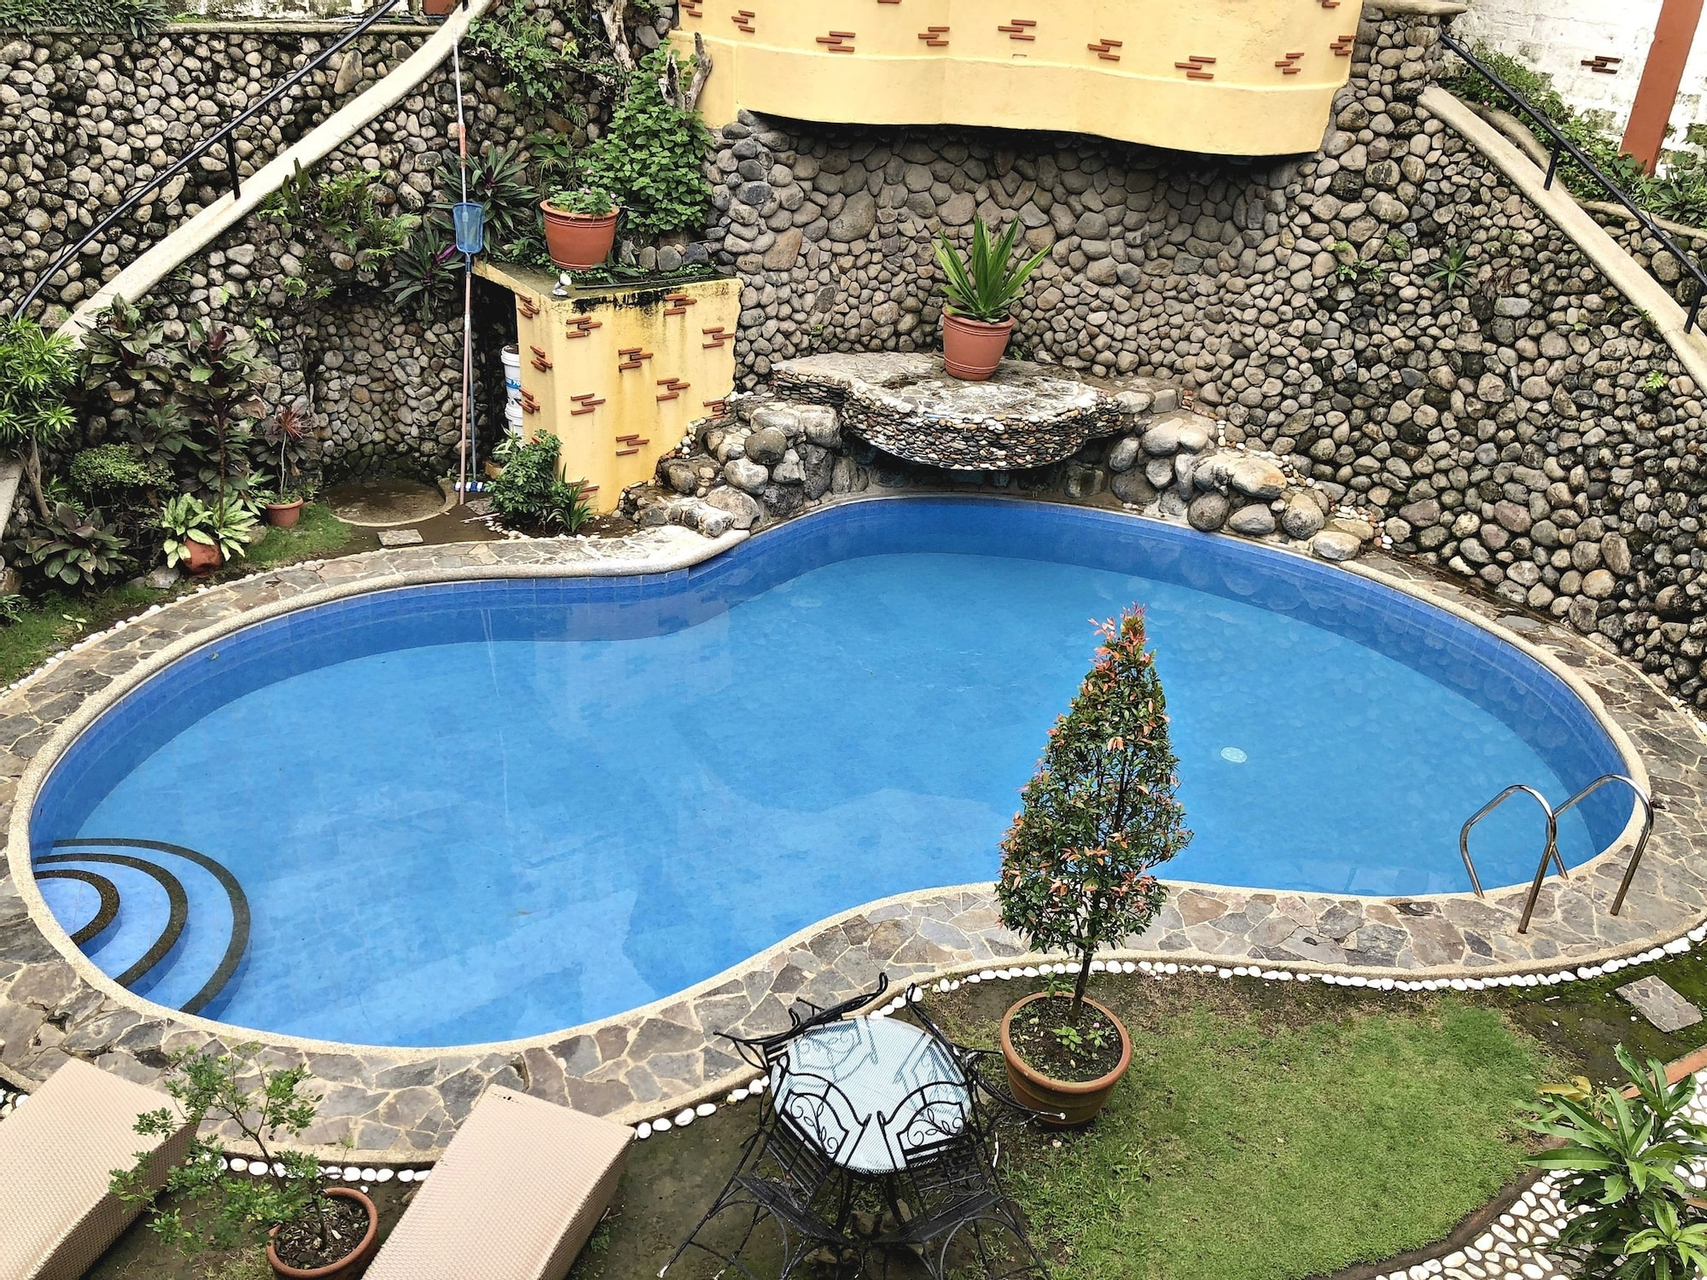 Outdoor pool 4, Pura Vida Resort, Tagaytay City